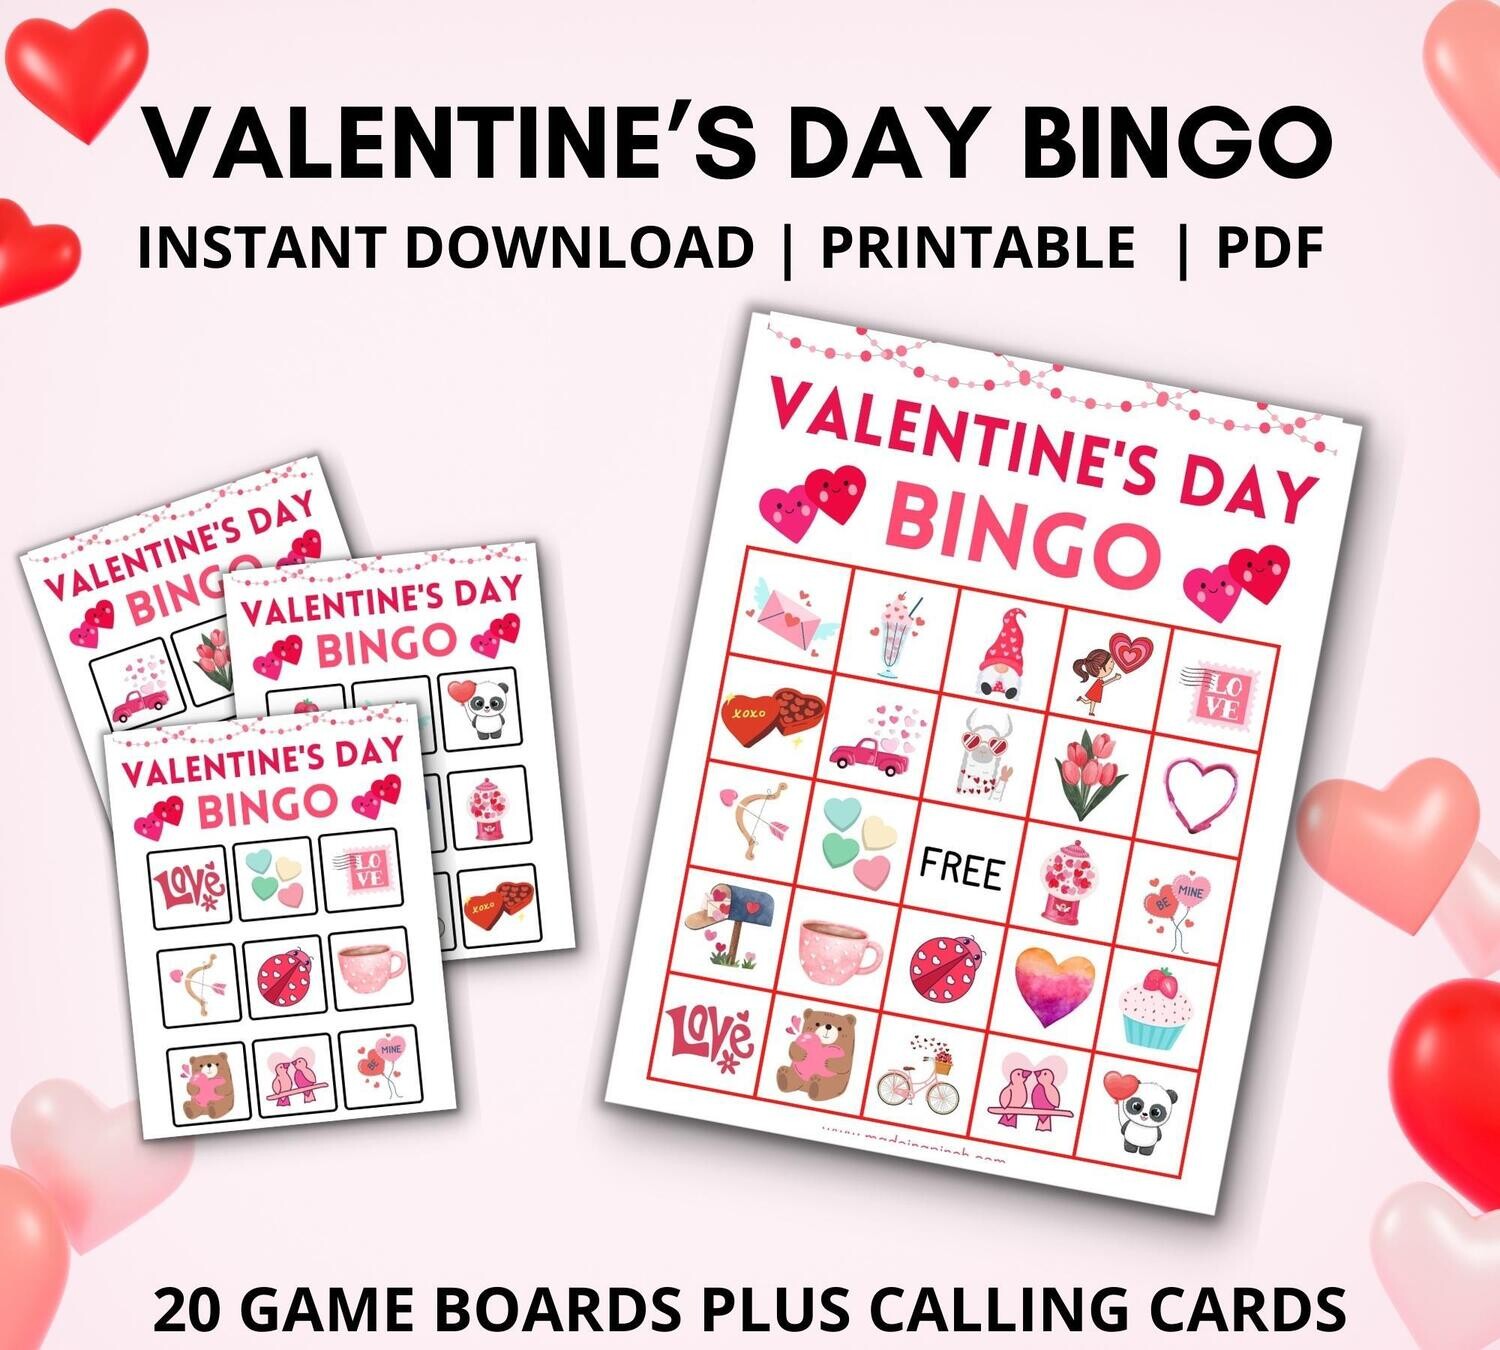 Valentine's Day Bingo Set